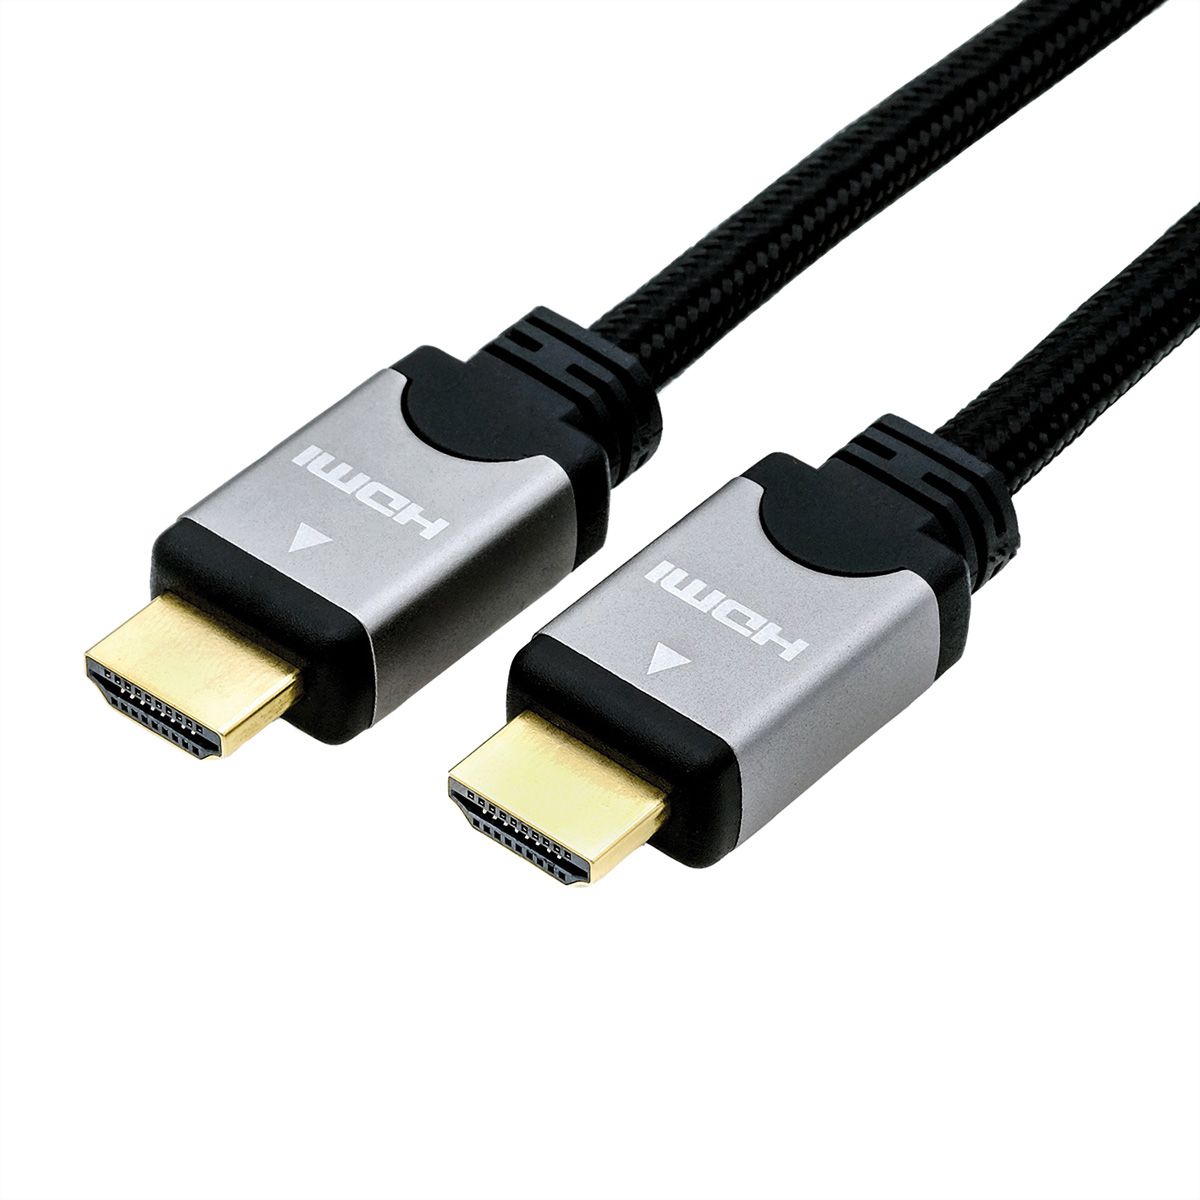 FALSK Skilt Nautisk ROLINE HDMI High Speed Cable + Ethernet, M/M, black /silver, 3 m - SECOMP  International AG